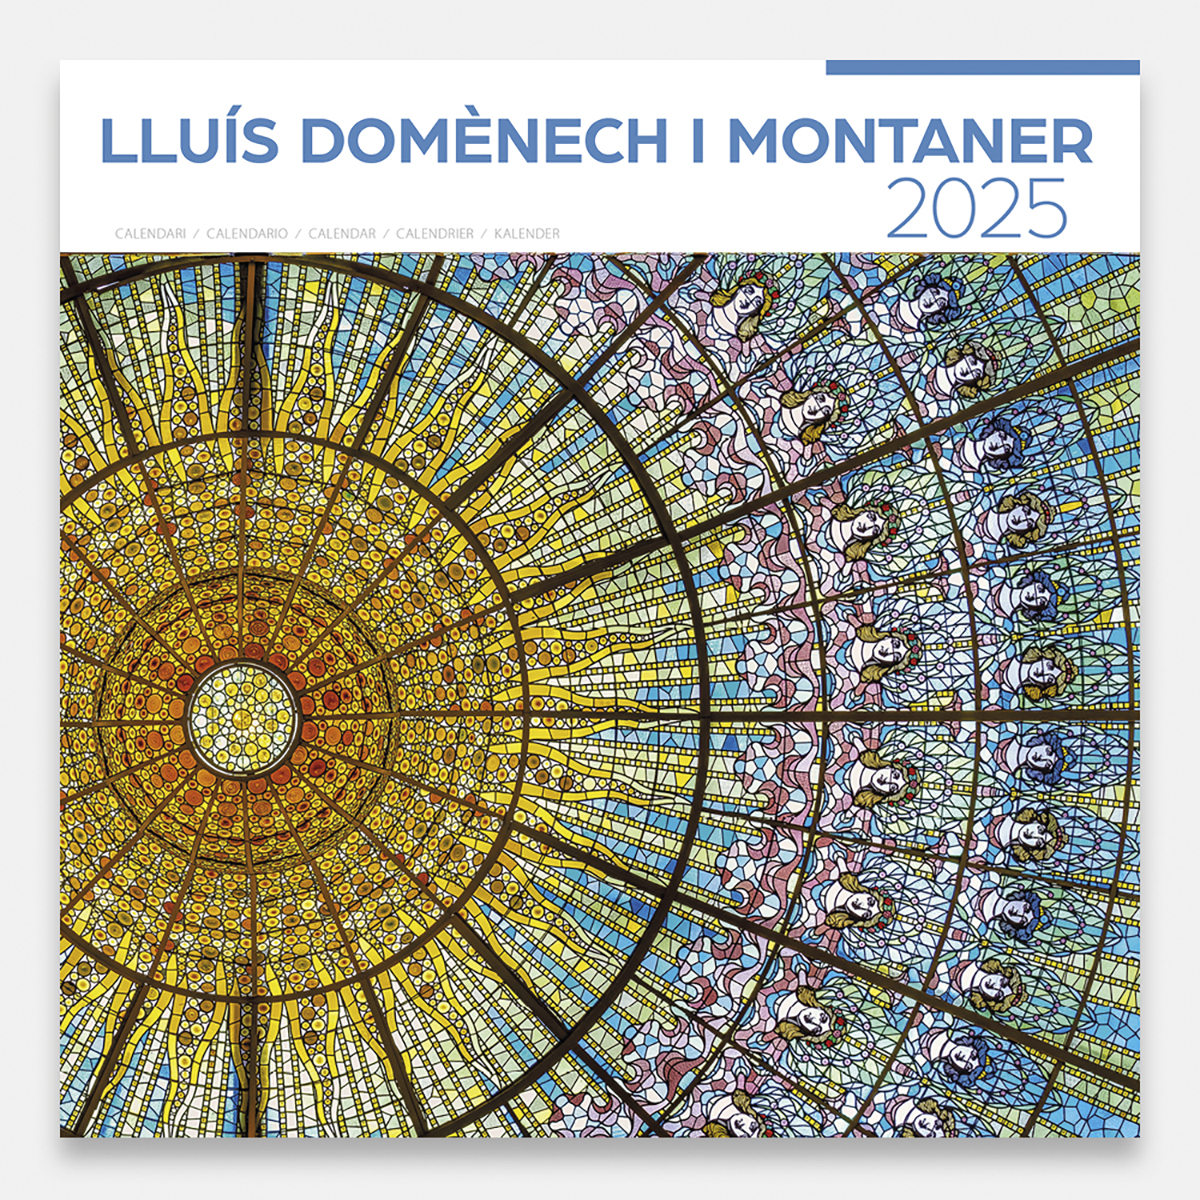 Calendar 2025 Lluís Domènech i Montaner 25dmg1a calendario pared 2025 lluis domenech